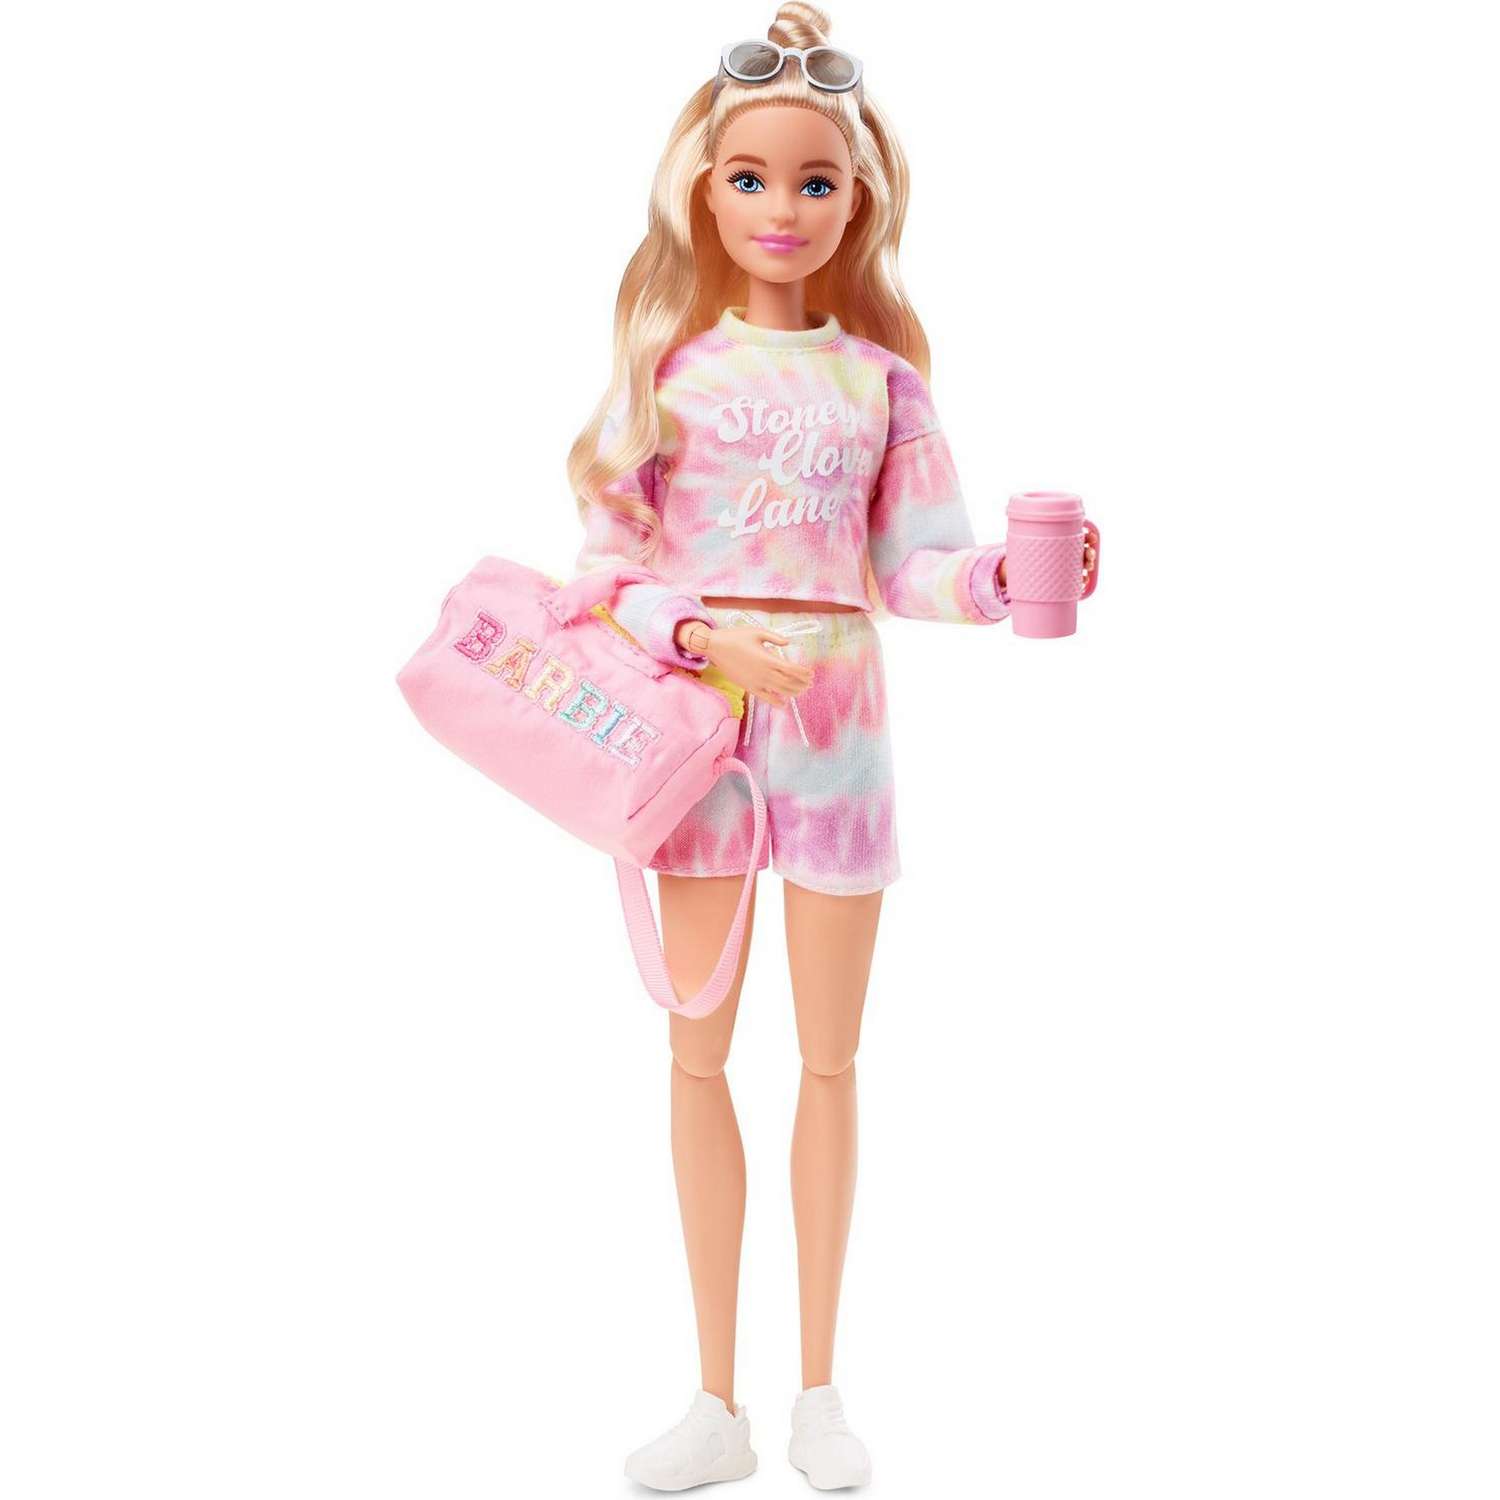 Кукла Barbie Stoney Clover Lane с аксессуарами GTJ80 GTJ80 - фото 1